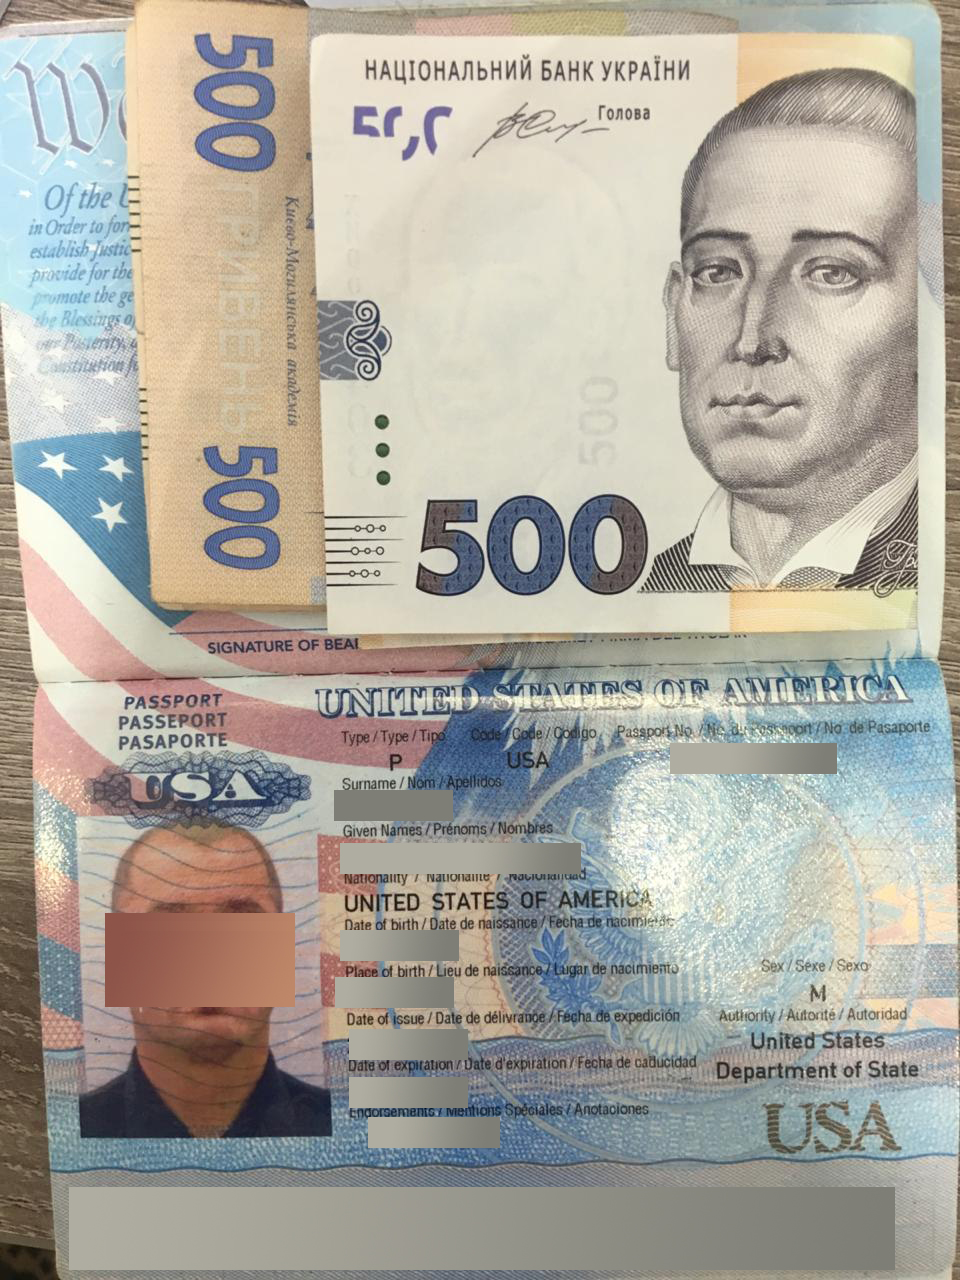 Американець, який просрочив термін перебування в Україні, спробував підкупити прикордонника за тисячу гривень 